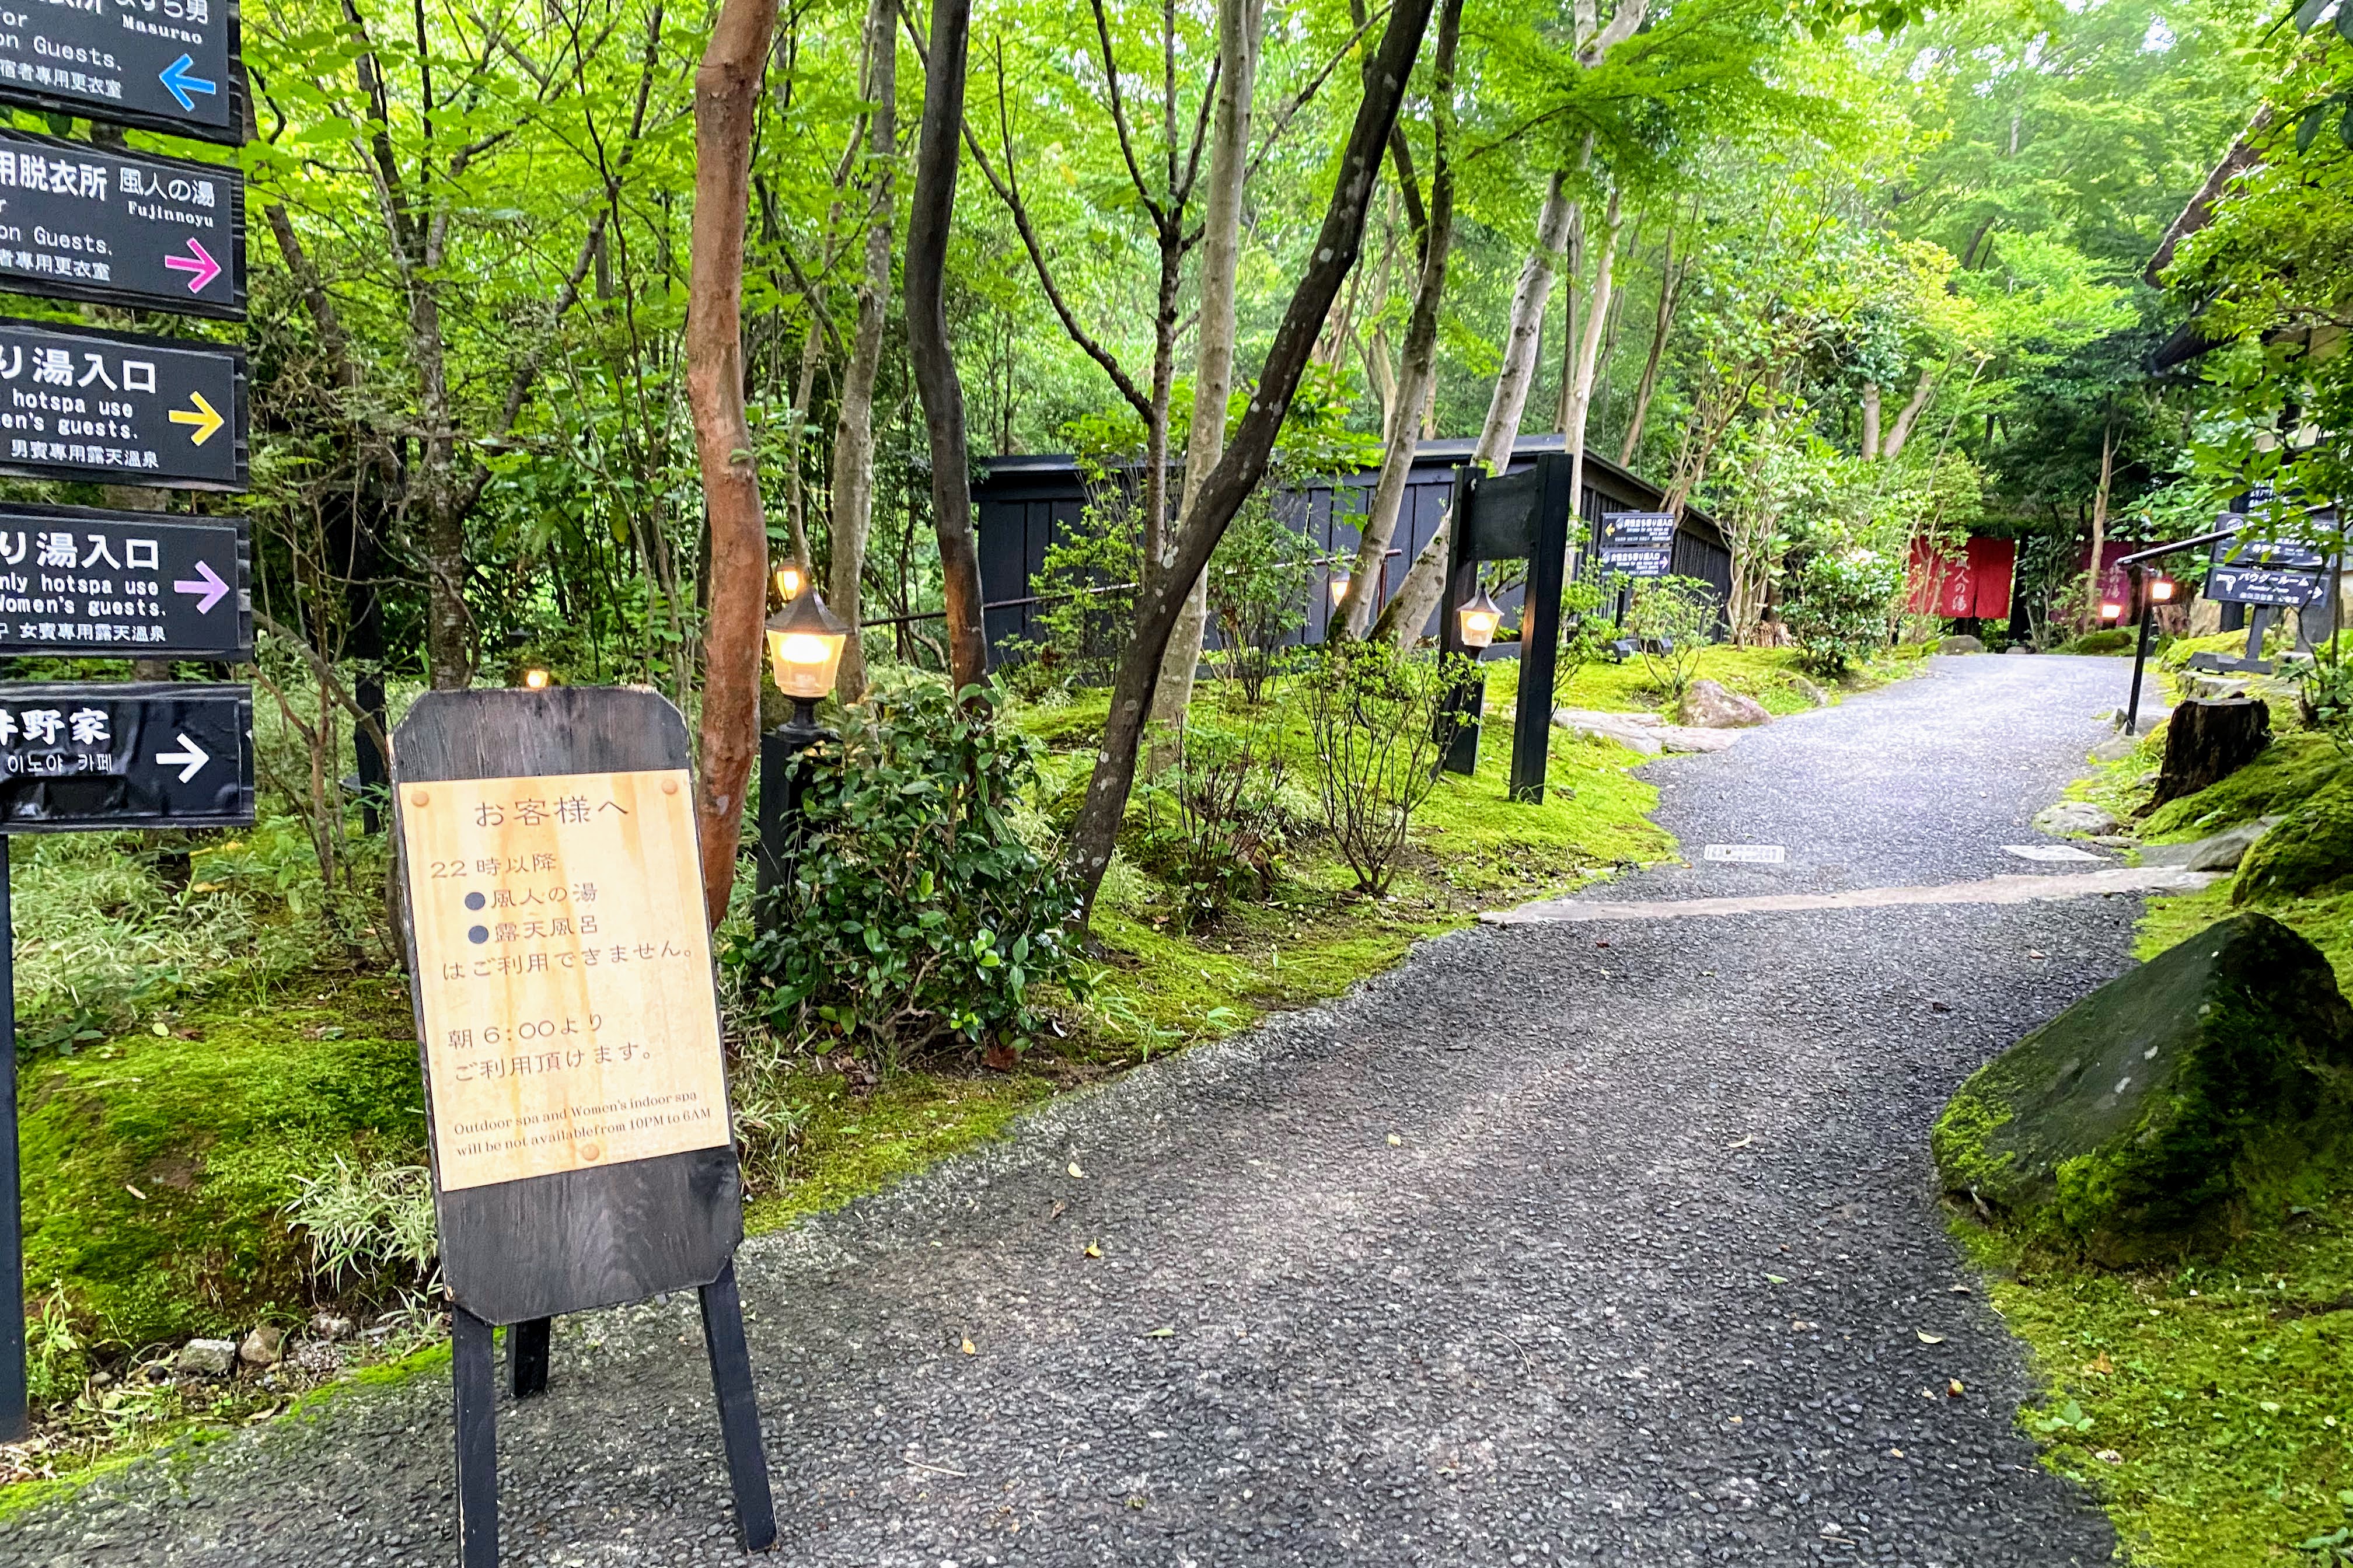 黒川温泉 山あいの宿 山みず木 - Lodge Yamami